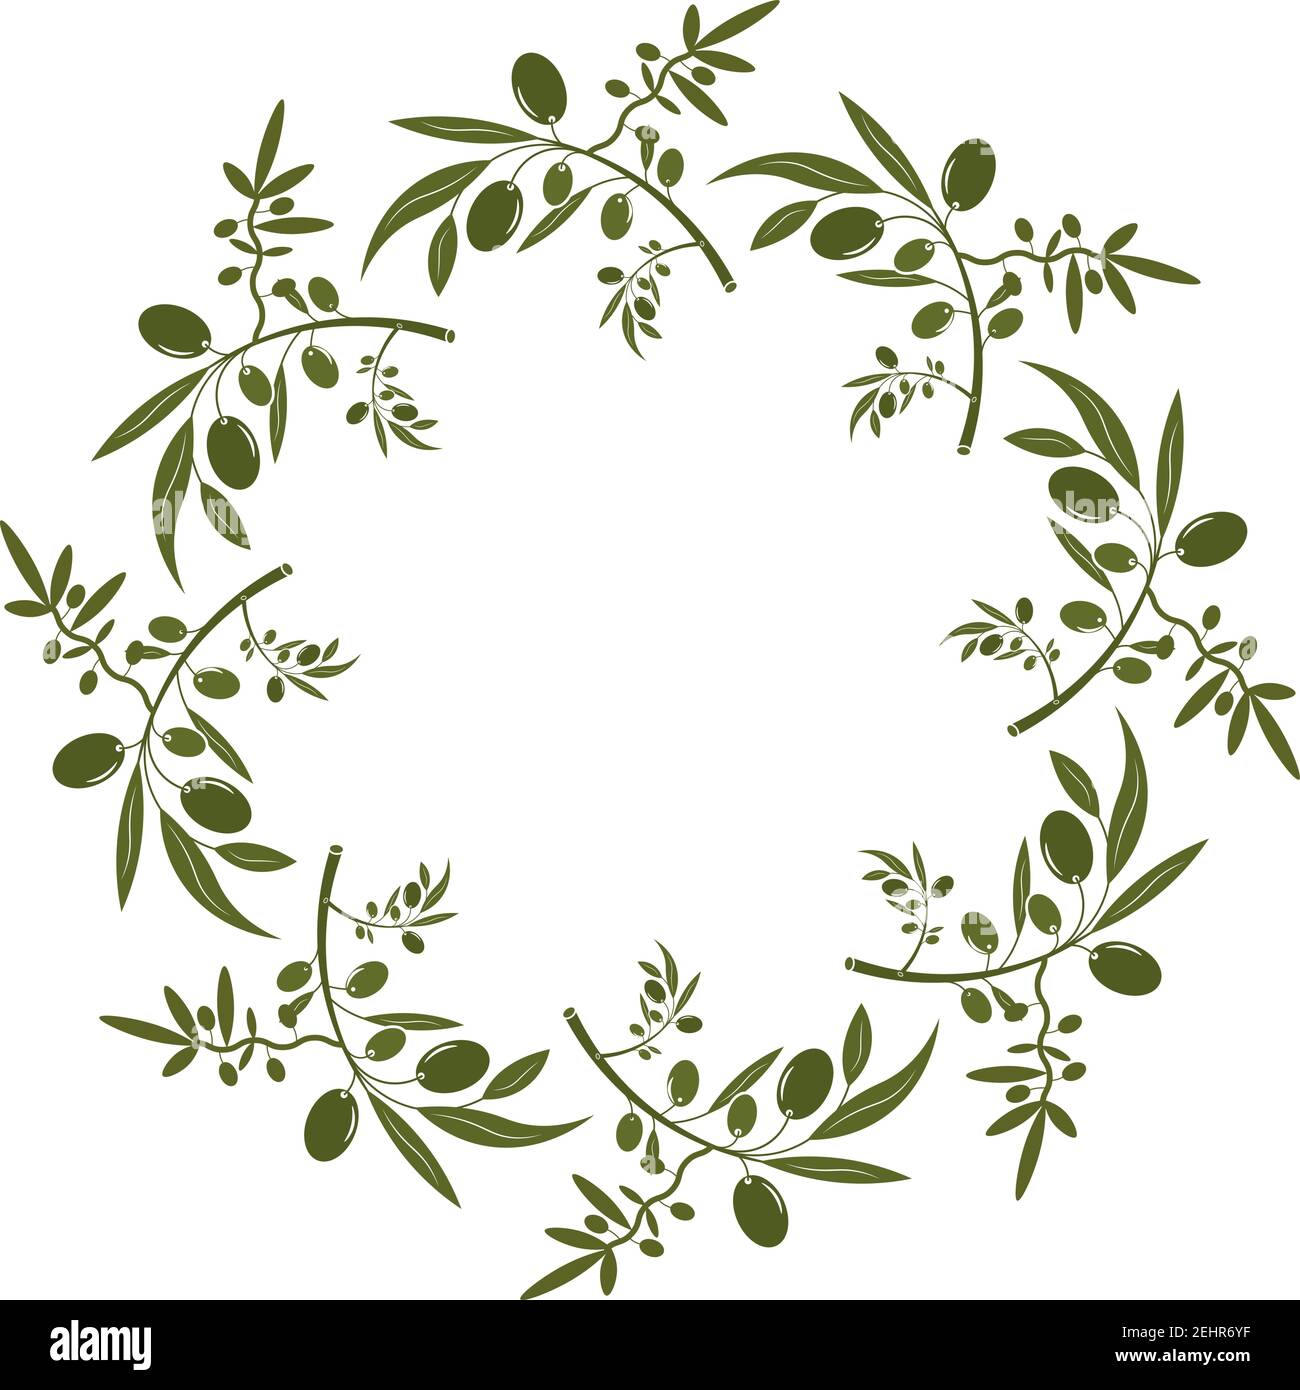 Olivenkranz mit Beeren und Blättern. Handgezeichnete florale Vektor-Grenze mit Olivenobst und Baumzweigen mit Blättern isoliert auf weißem Hintergrund. F Stock Vektor